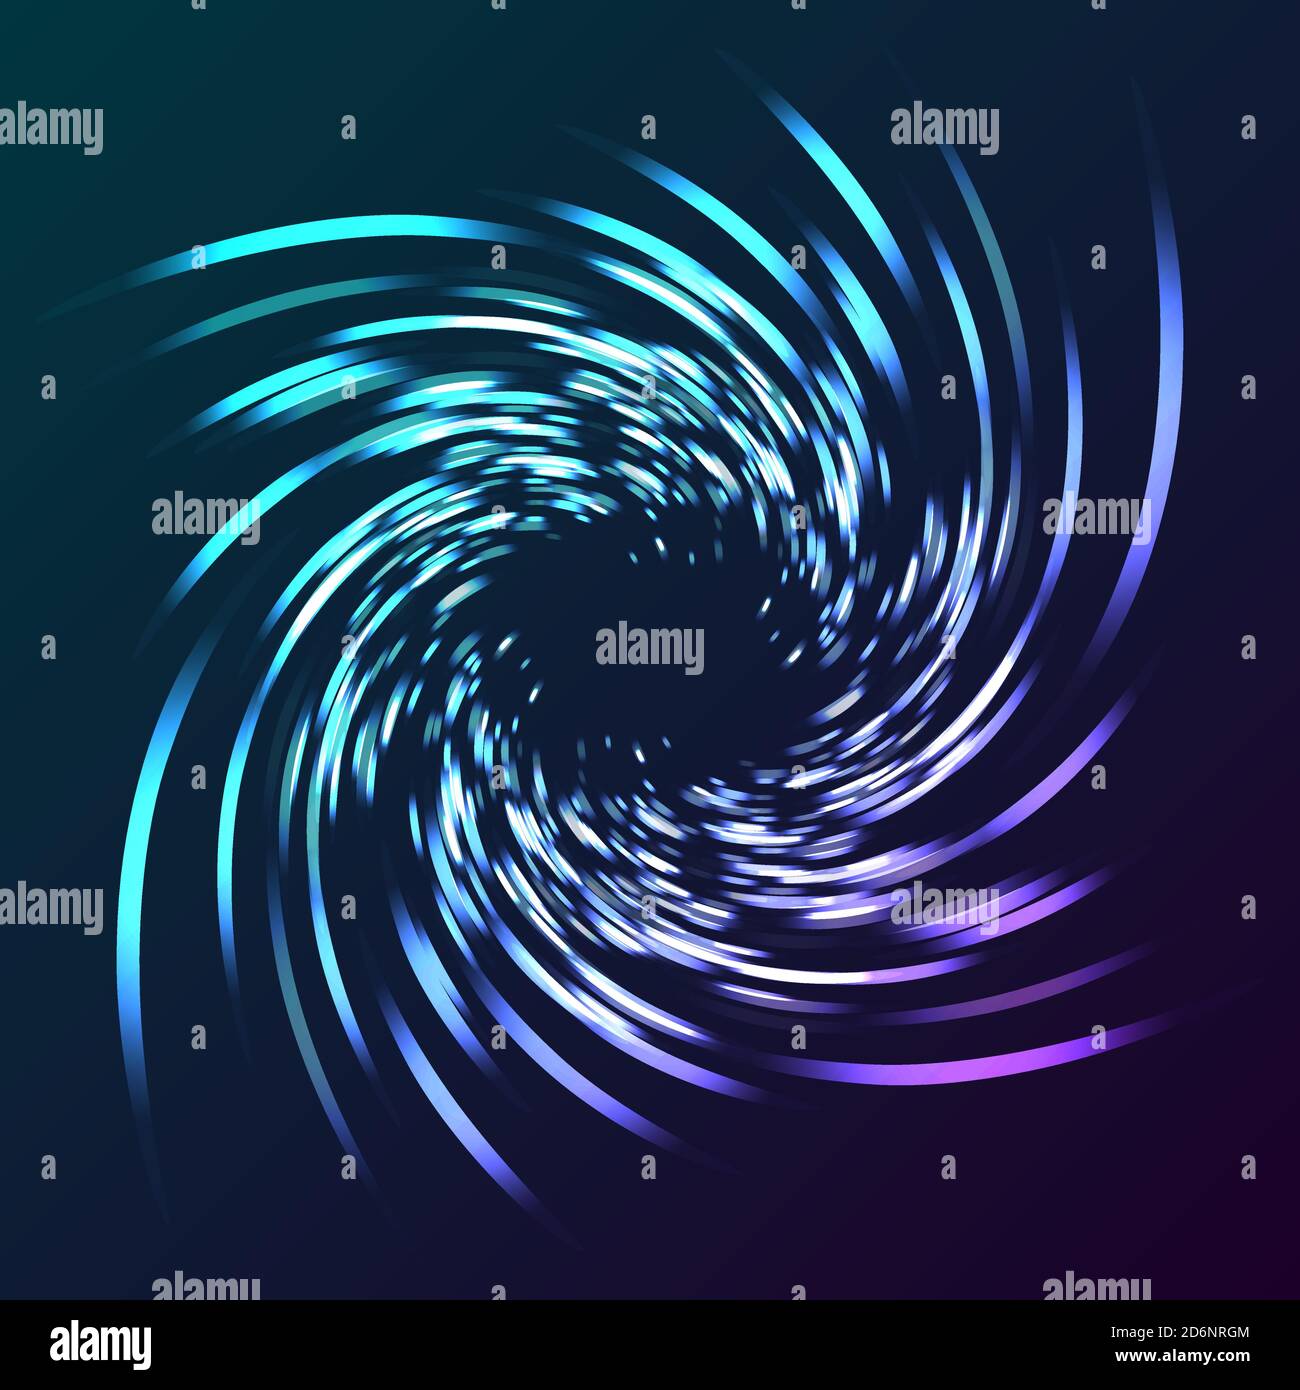 Illustrazione della torsione astratta delle luci, luci blu in movimento che formano la forma ipnotica su sfondo scuro Illustrazione Vettoriale